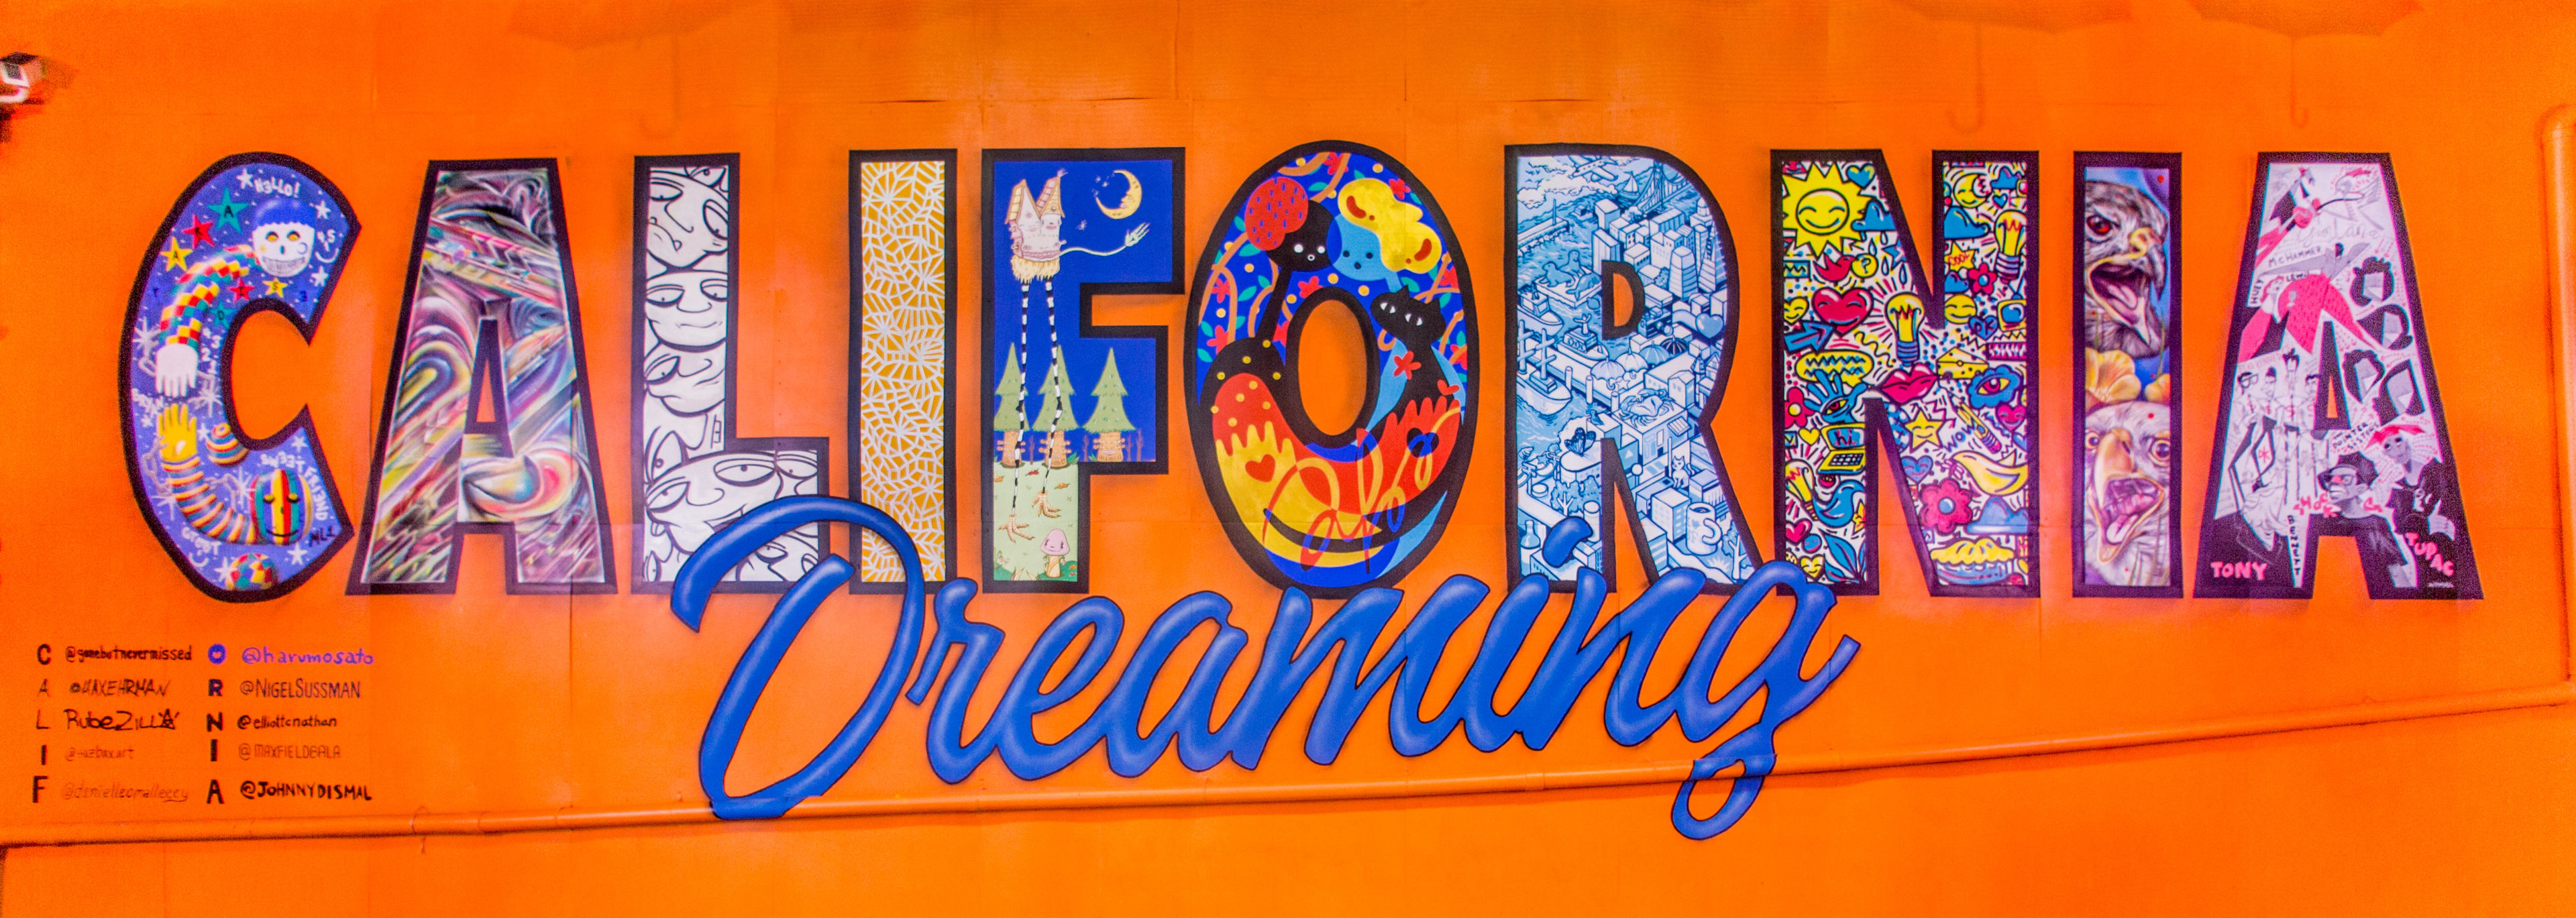 Värikäs seinämaalaus, jossa lukee "California Dreaming" Umbrella Alleyssa, Oakland, CA